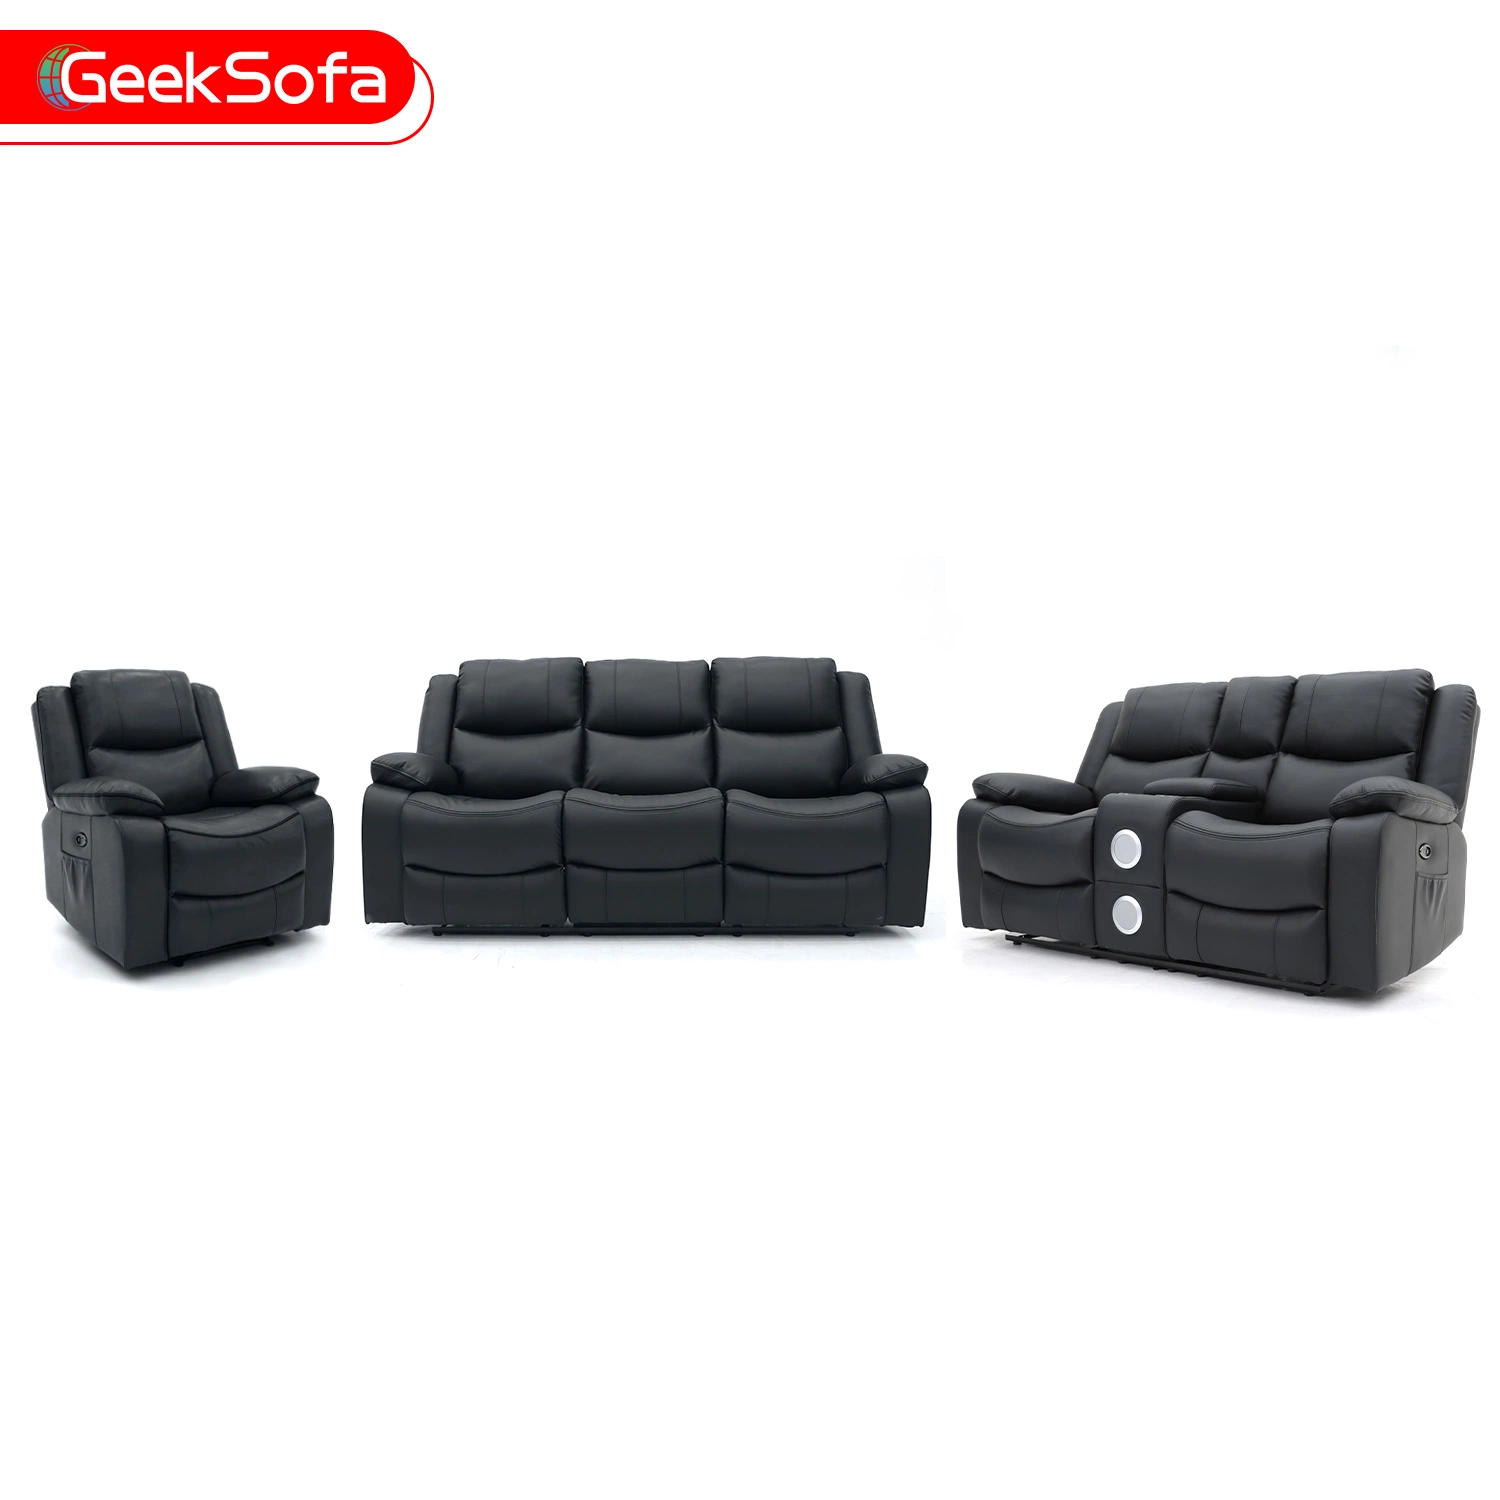 Geeksofa 3+2+1 Moderno Movimiento cuero sofá reclinable con masajes y portavasos para muebles de salón